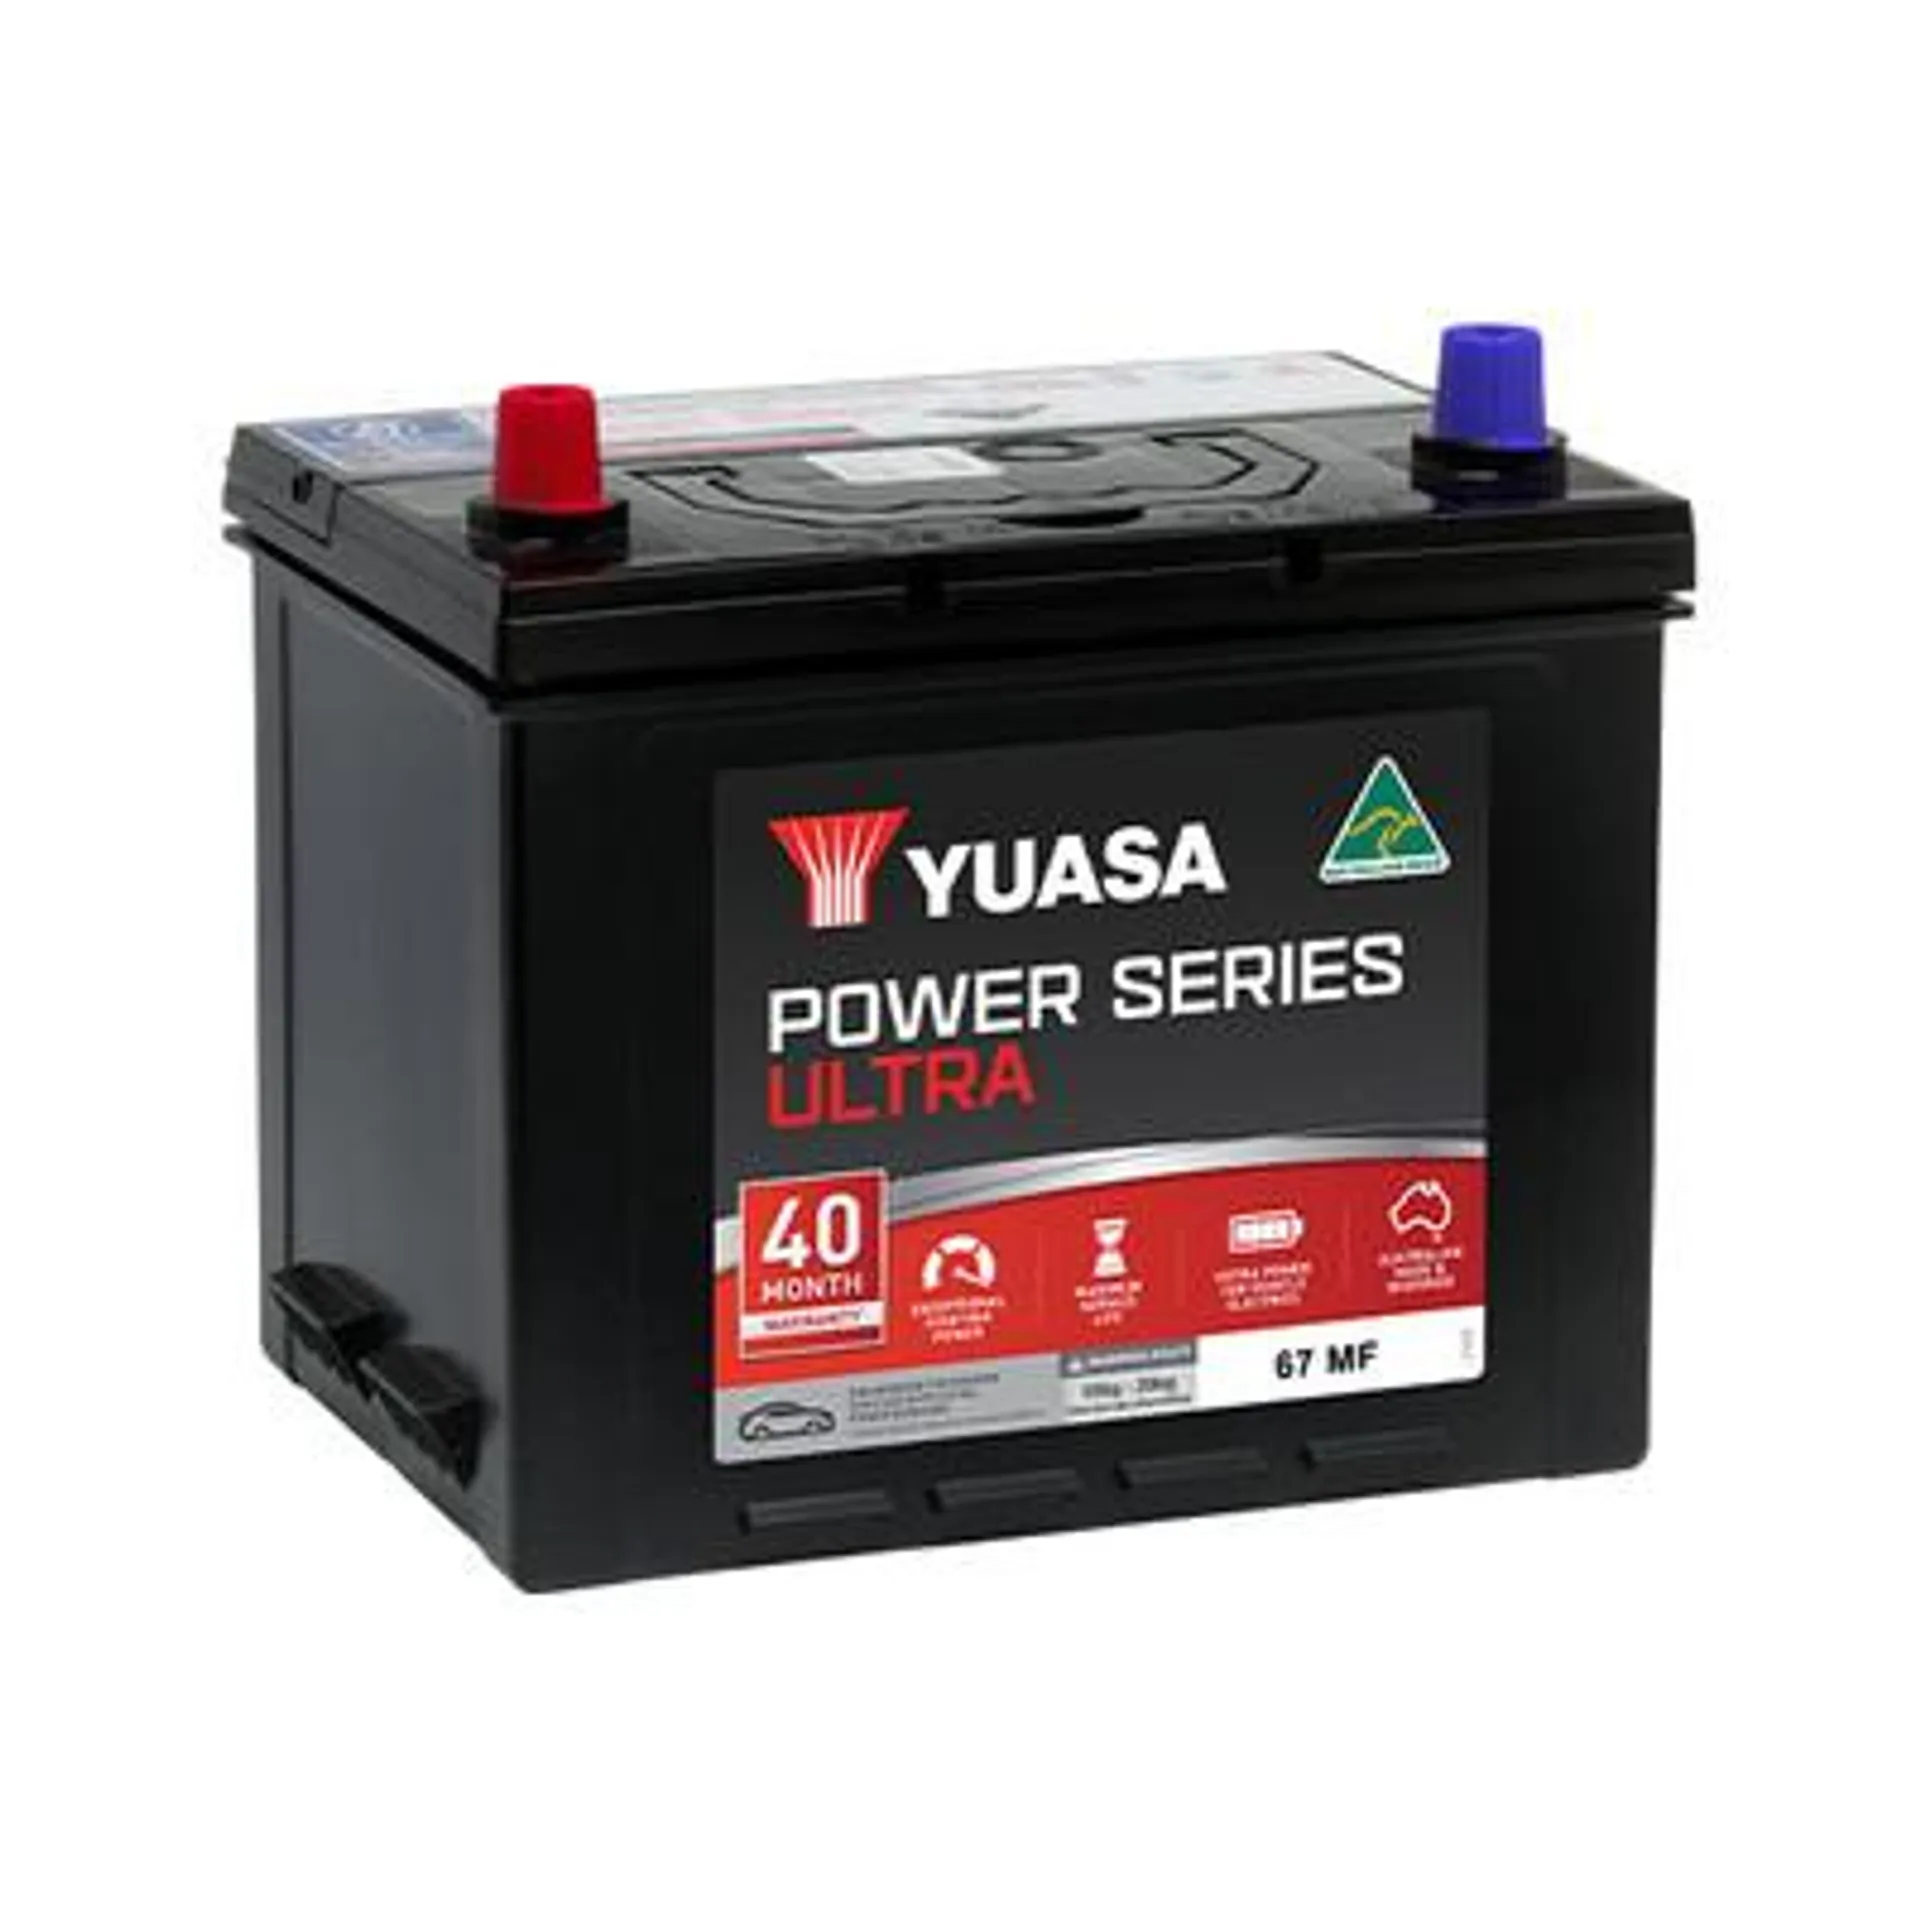 67 MF Yuasa Power Series ULTRA Auto Battery